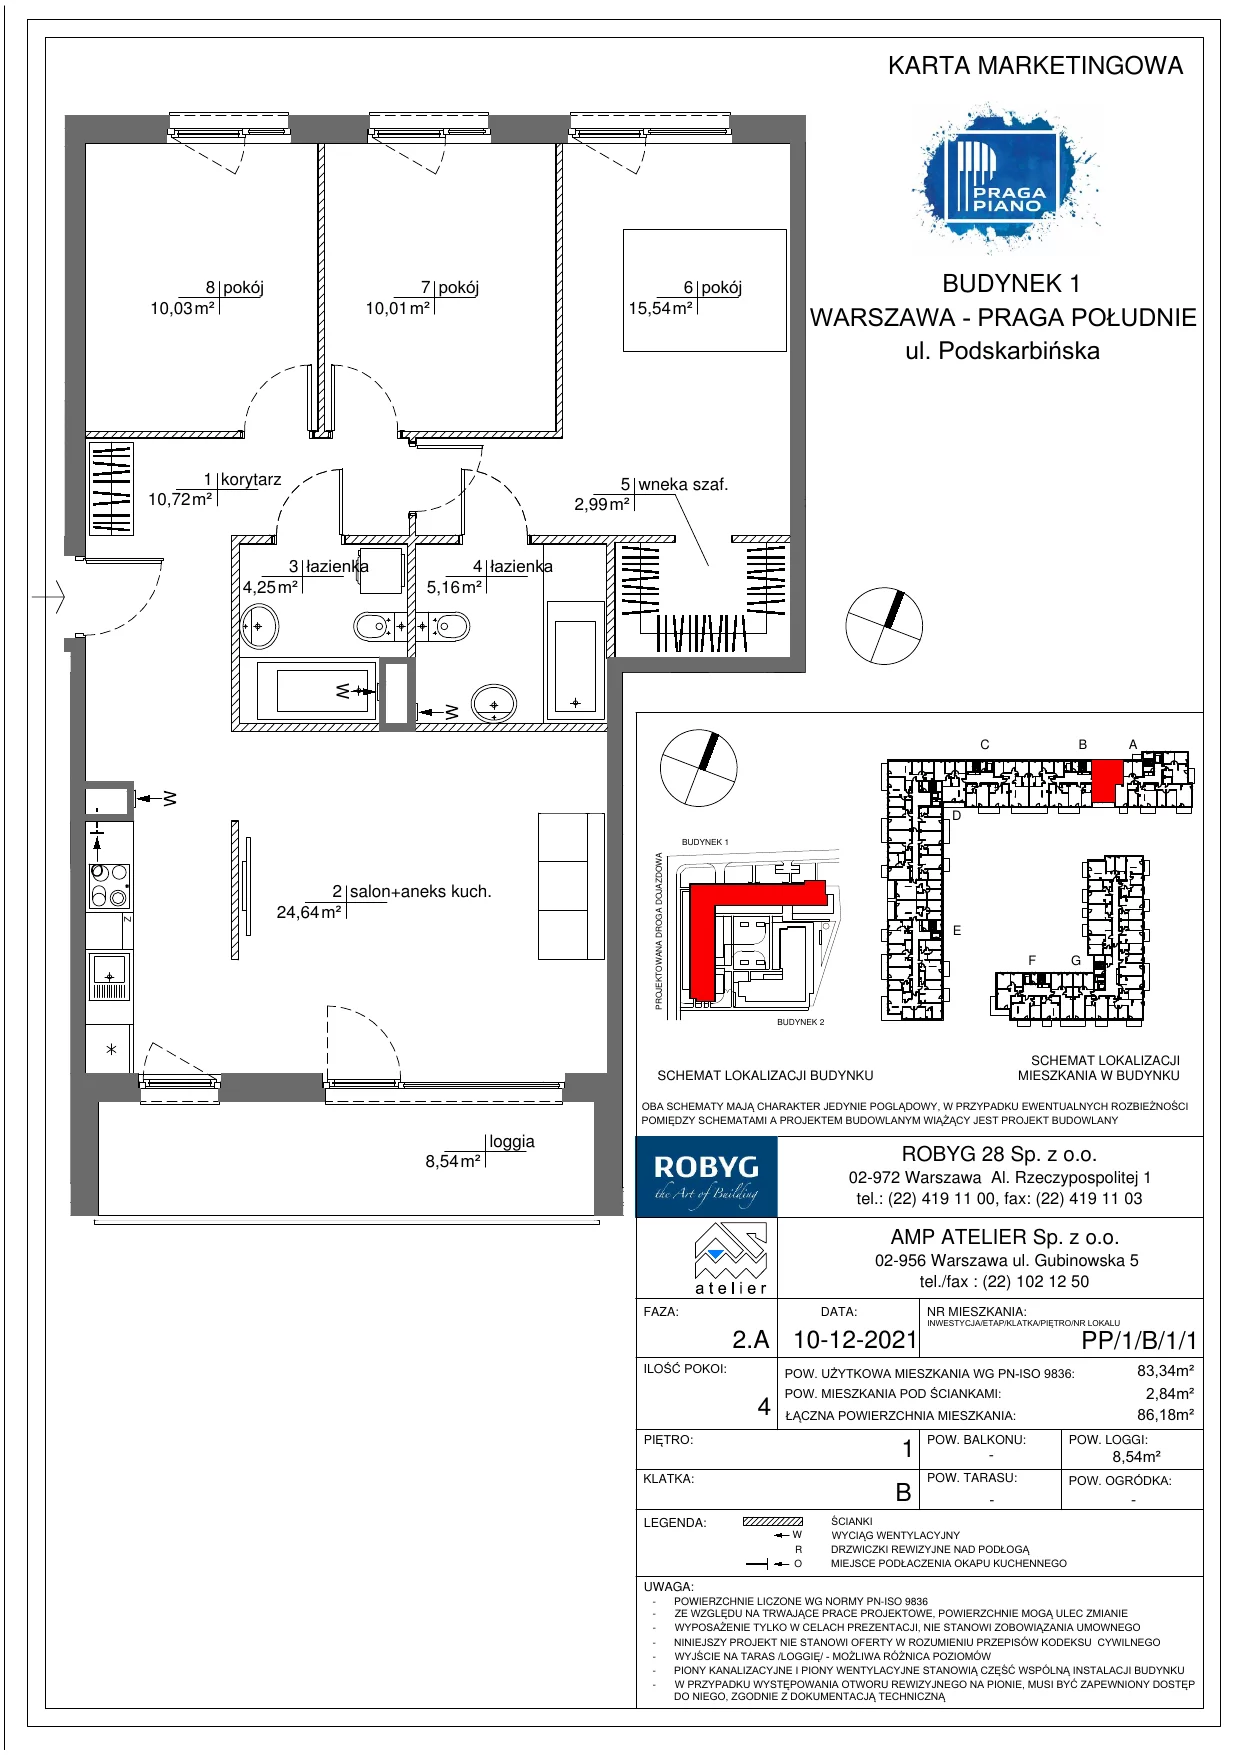 Mieszkanie 83,34 m², piętro 1, oferta nr PP/1/B/1/1, Praga Piano, Warszawa, Praga Południe, Kamionek, ul. Podskarbińska